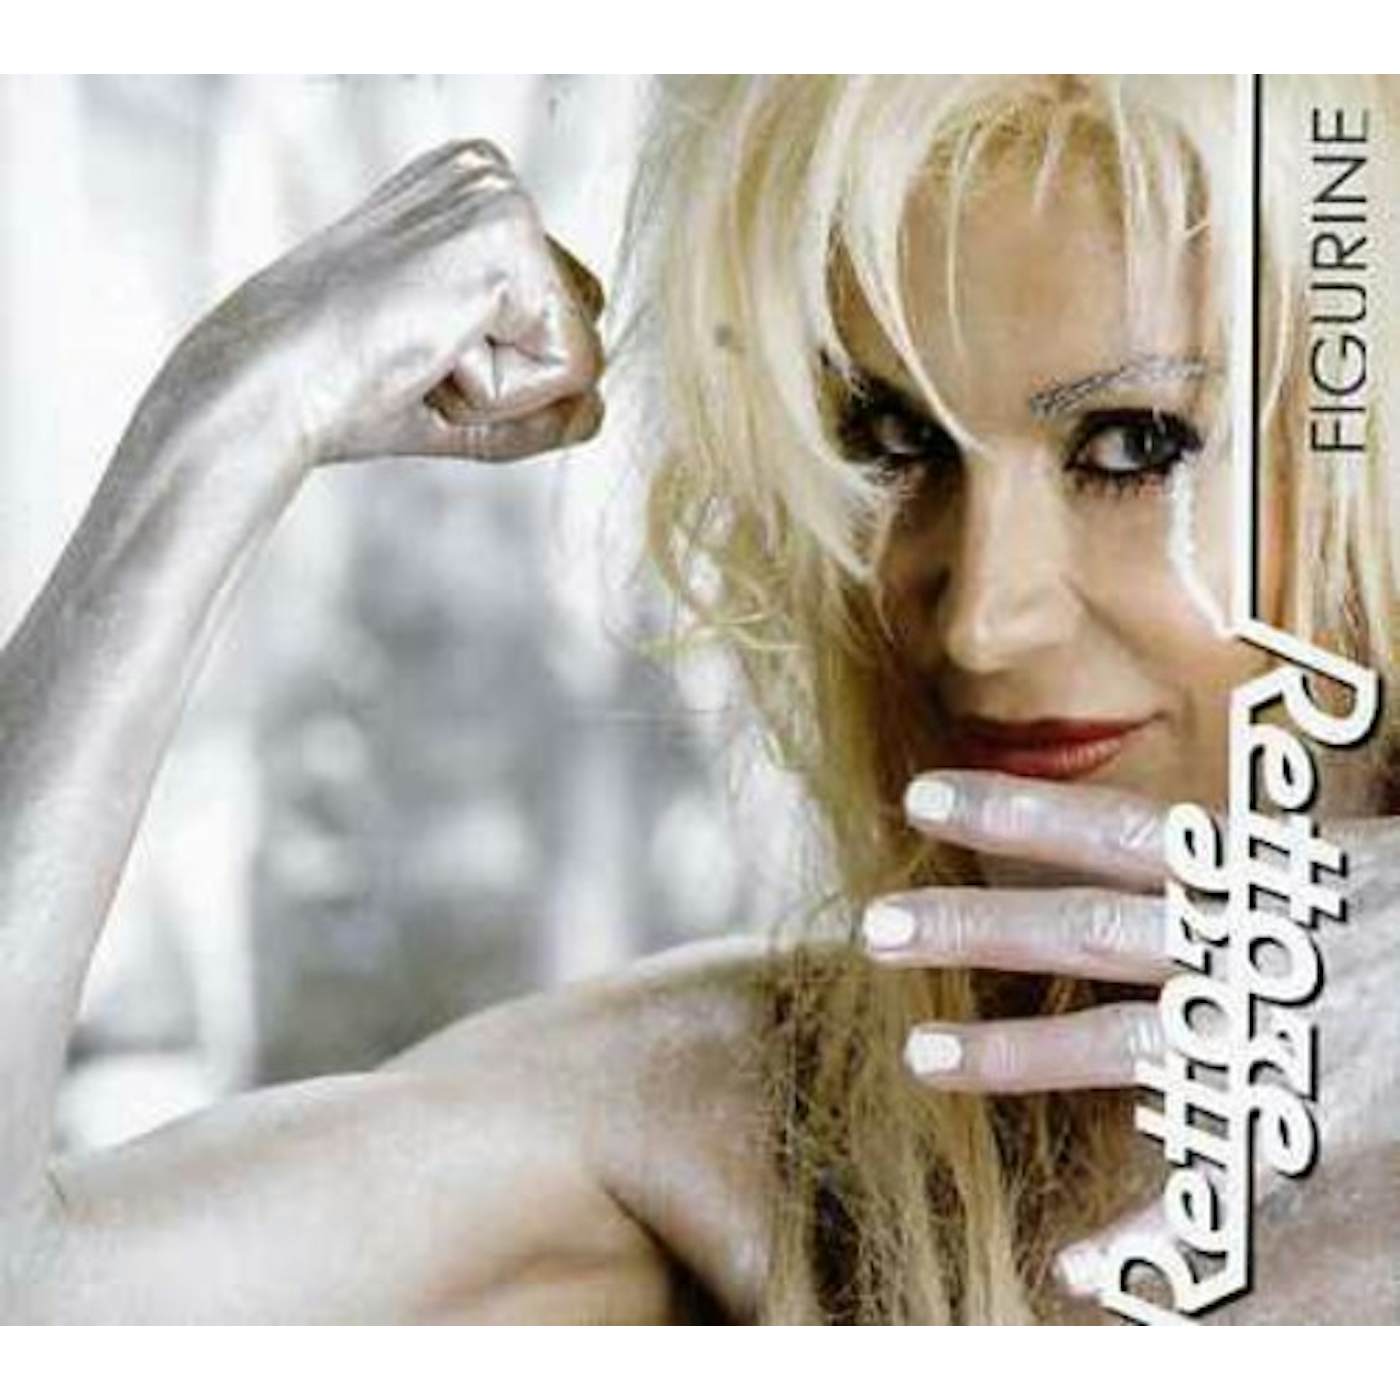 Donatella Rettore FIGURINE CD